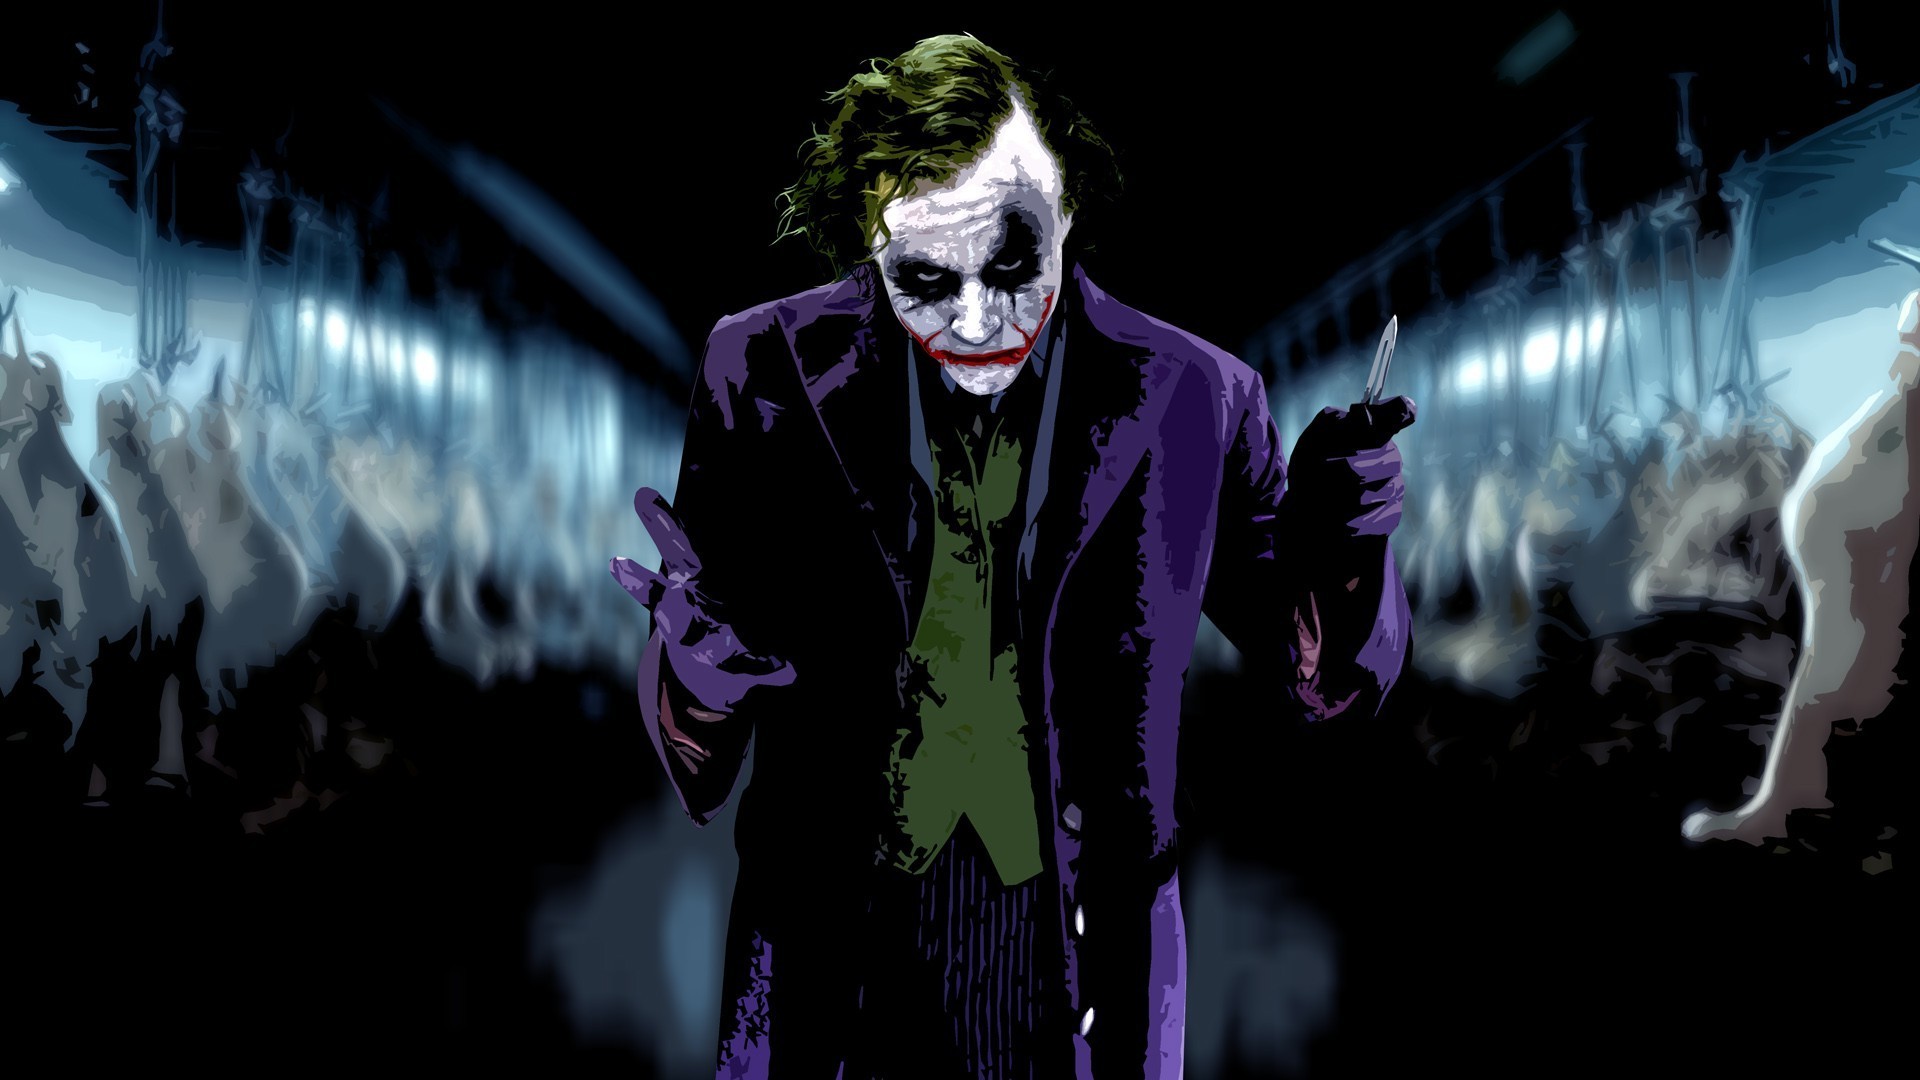 Dark Knight Joker Wallpaper (73+ images)